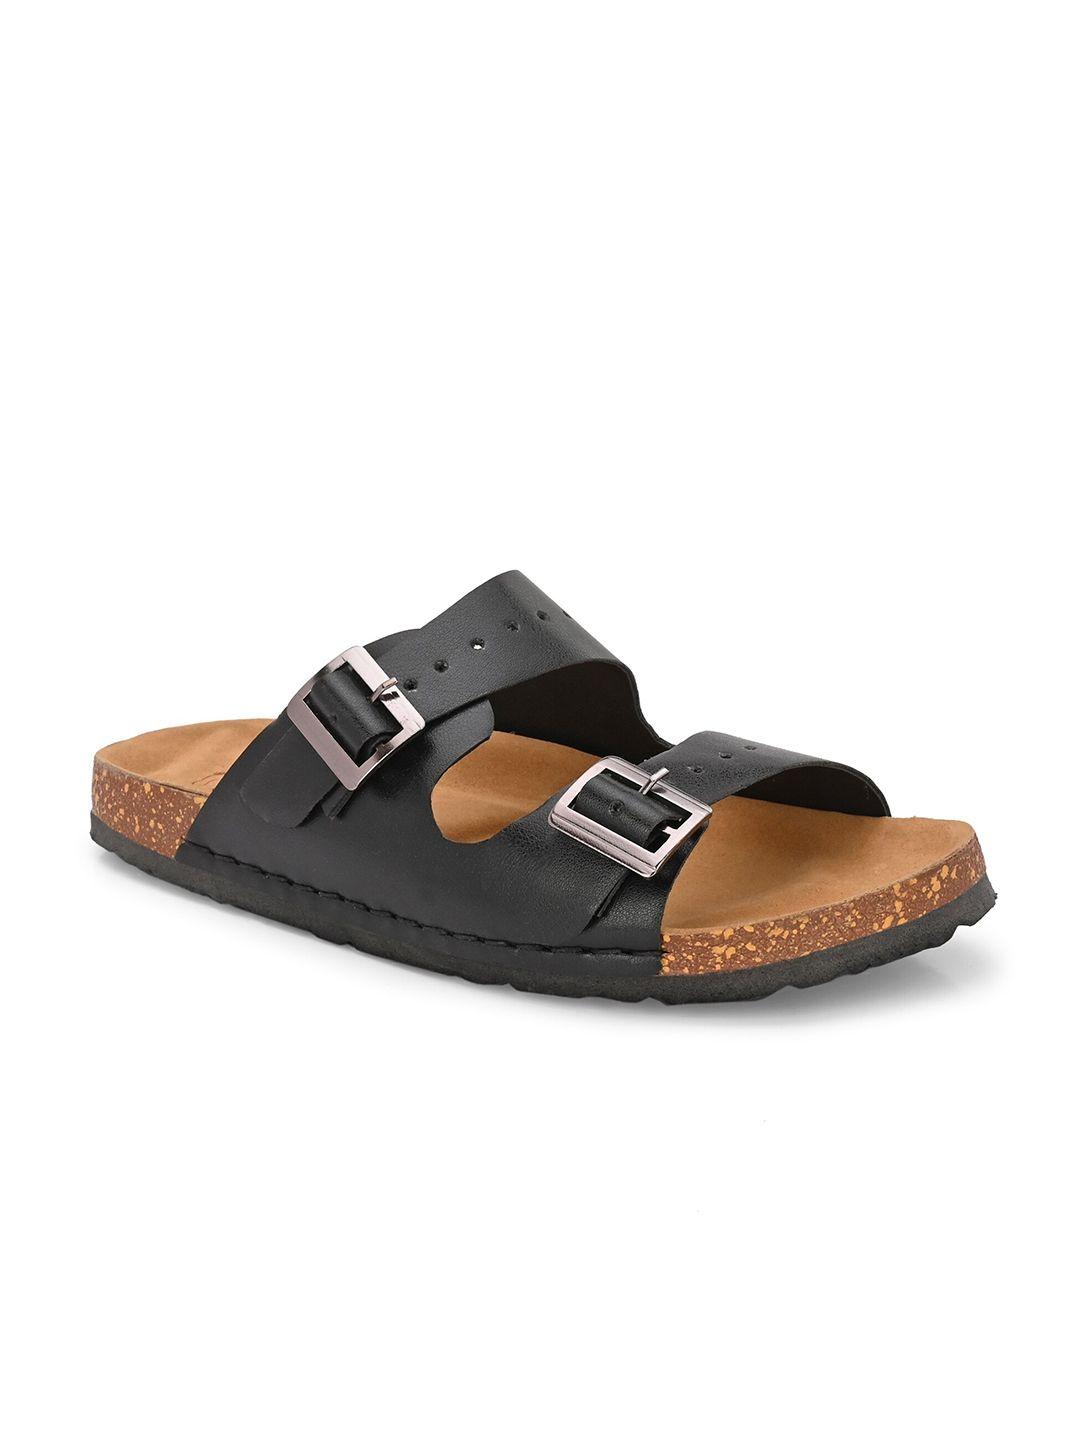 knoos men comfort sandals